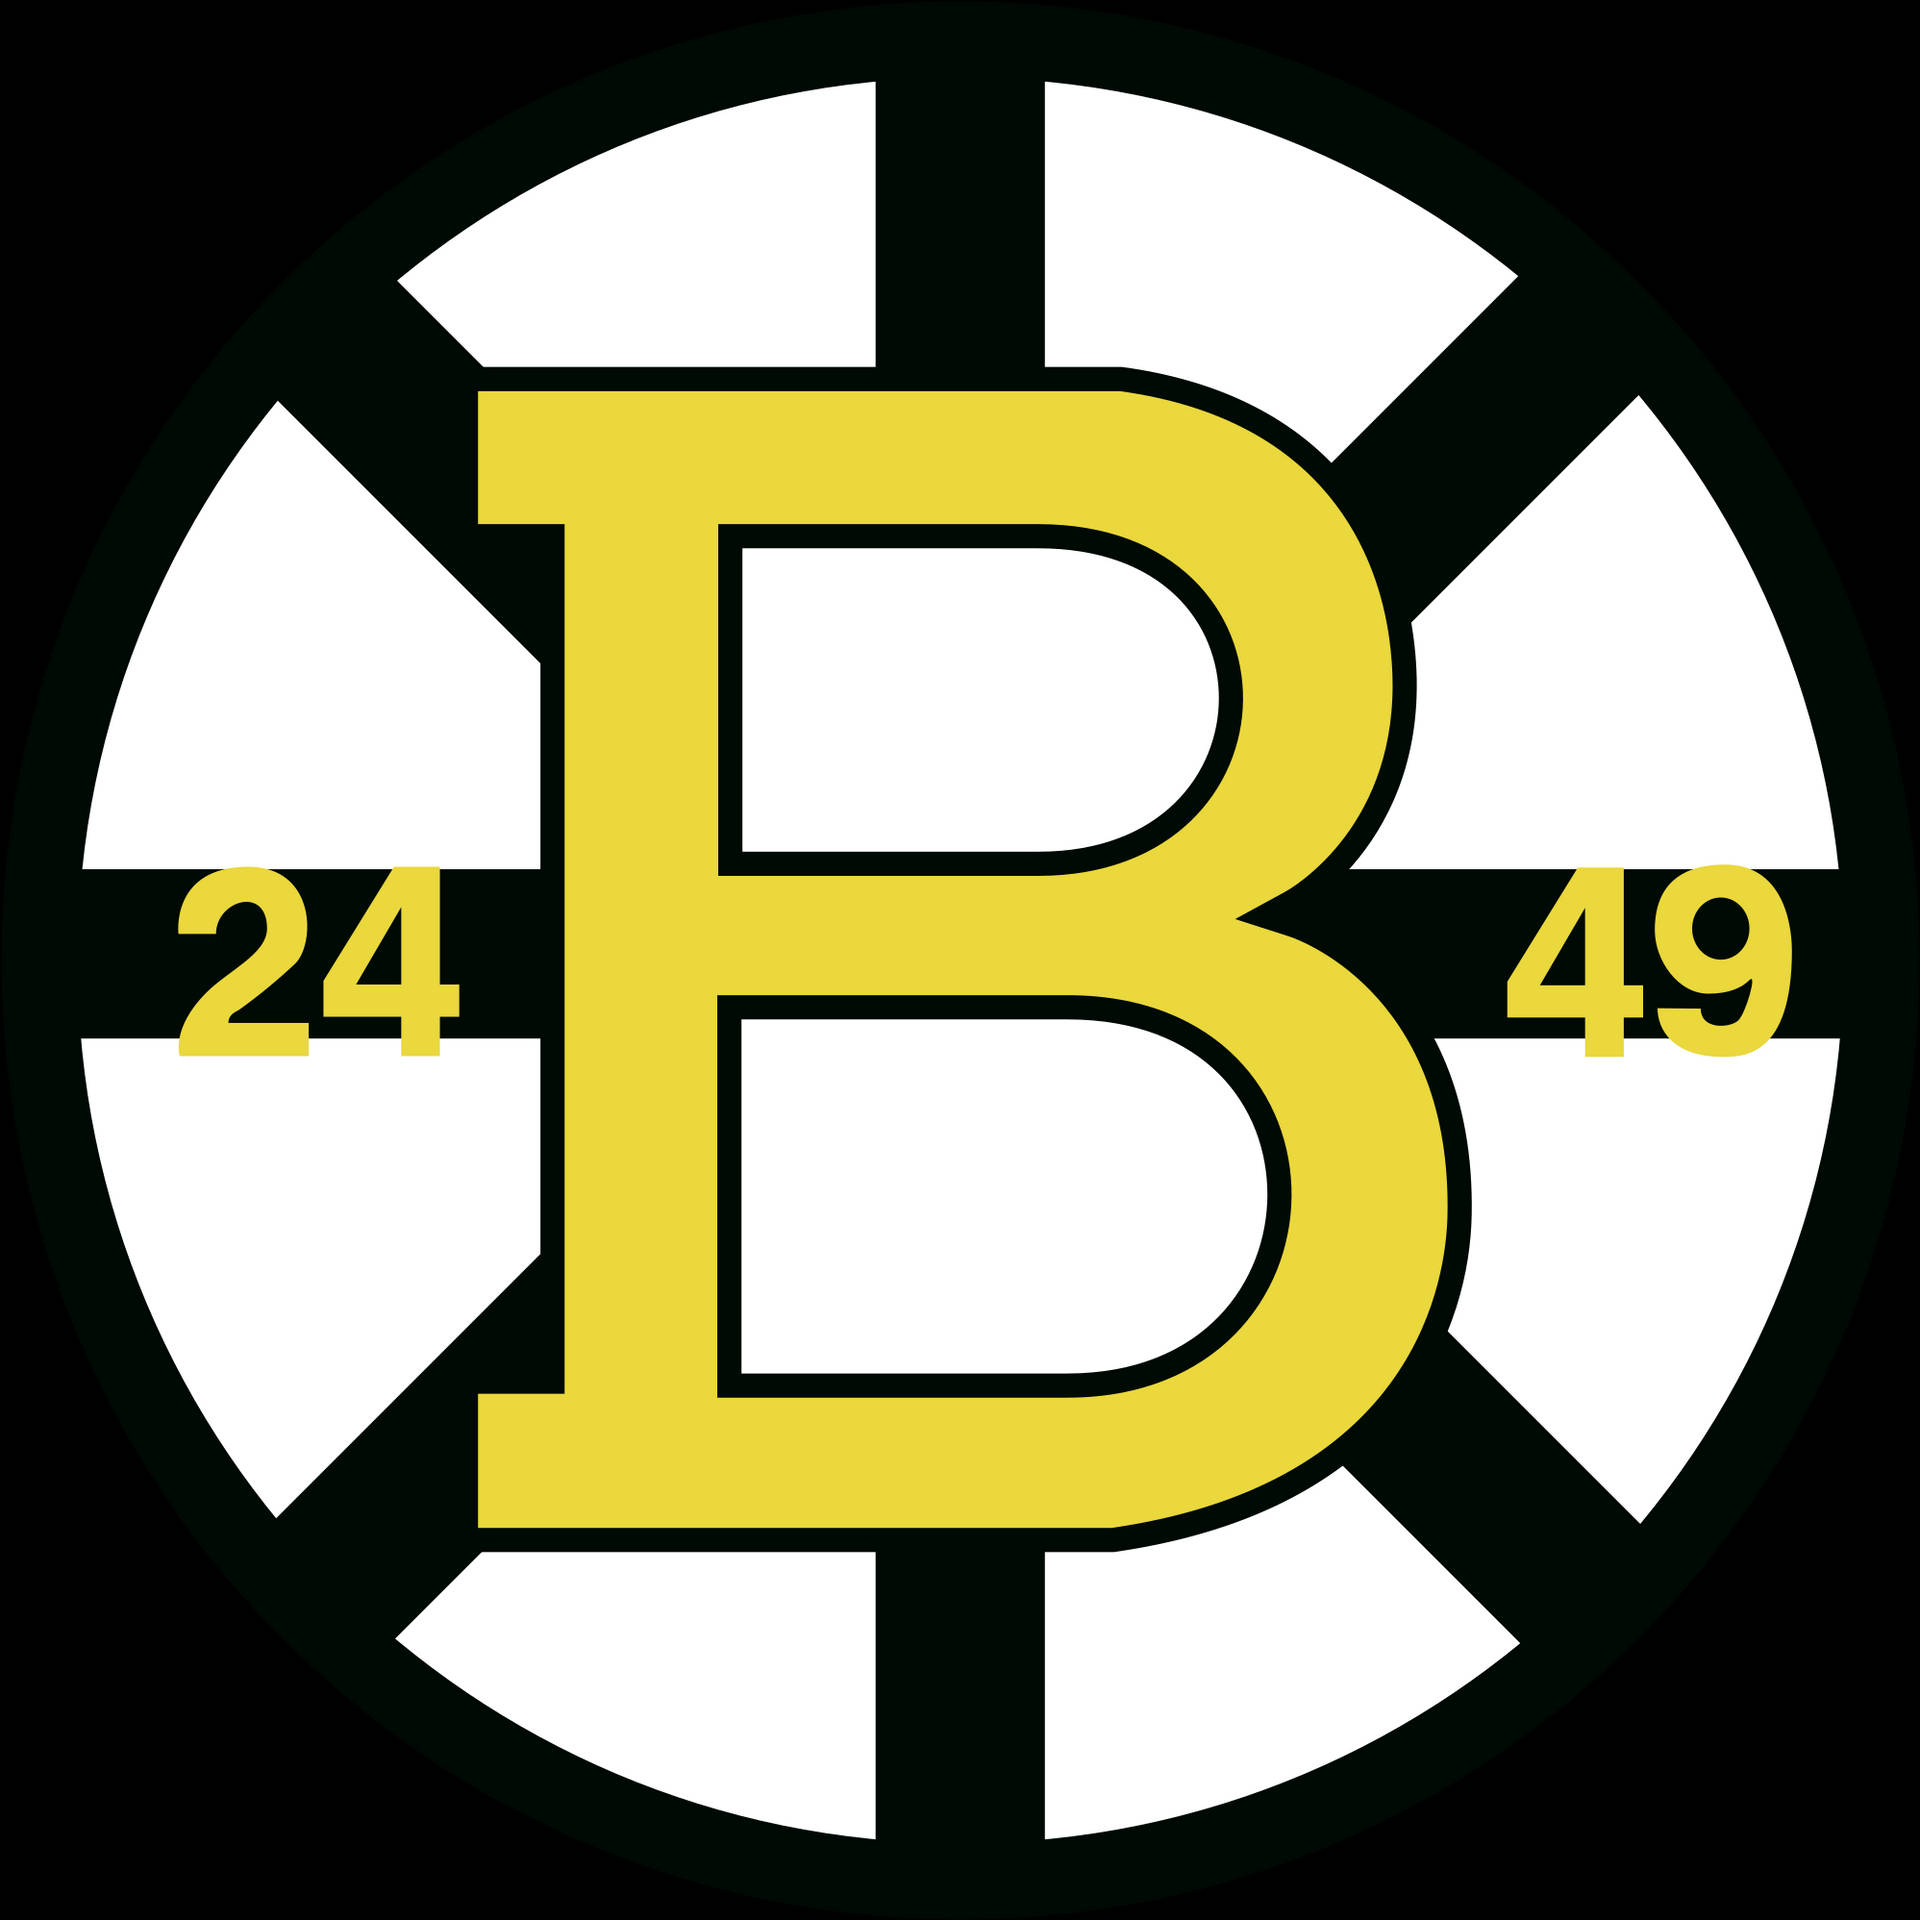 Antigologotipo Do Boston Bruins Papel de Parede